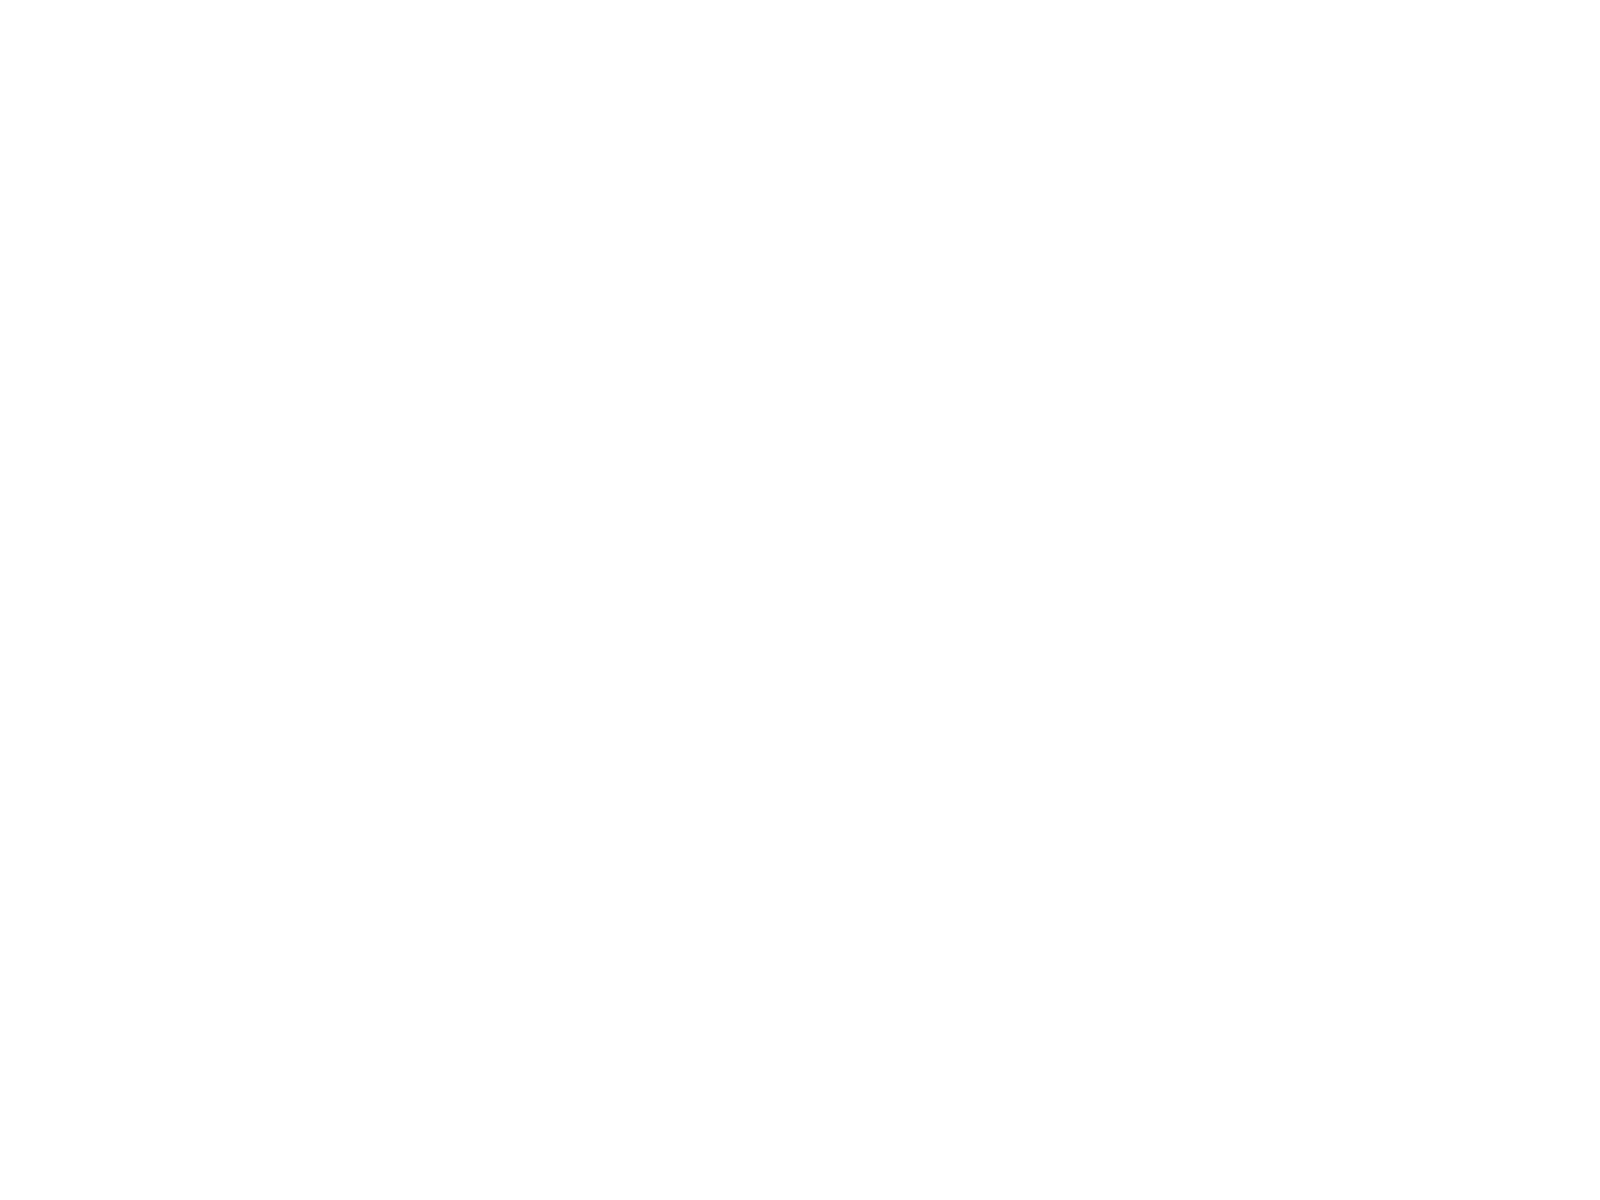 Анонс: Экспонат голбца, который представляет Великоустюгский музей-заповедник, называется коротко, а выглядит очень внушительно